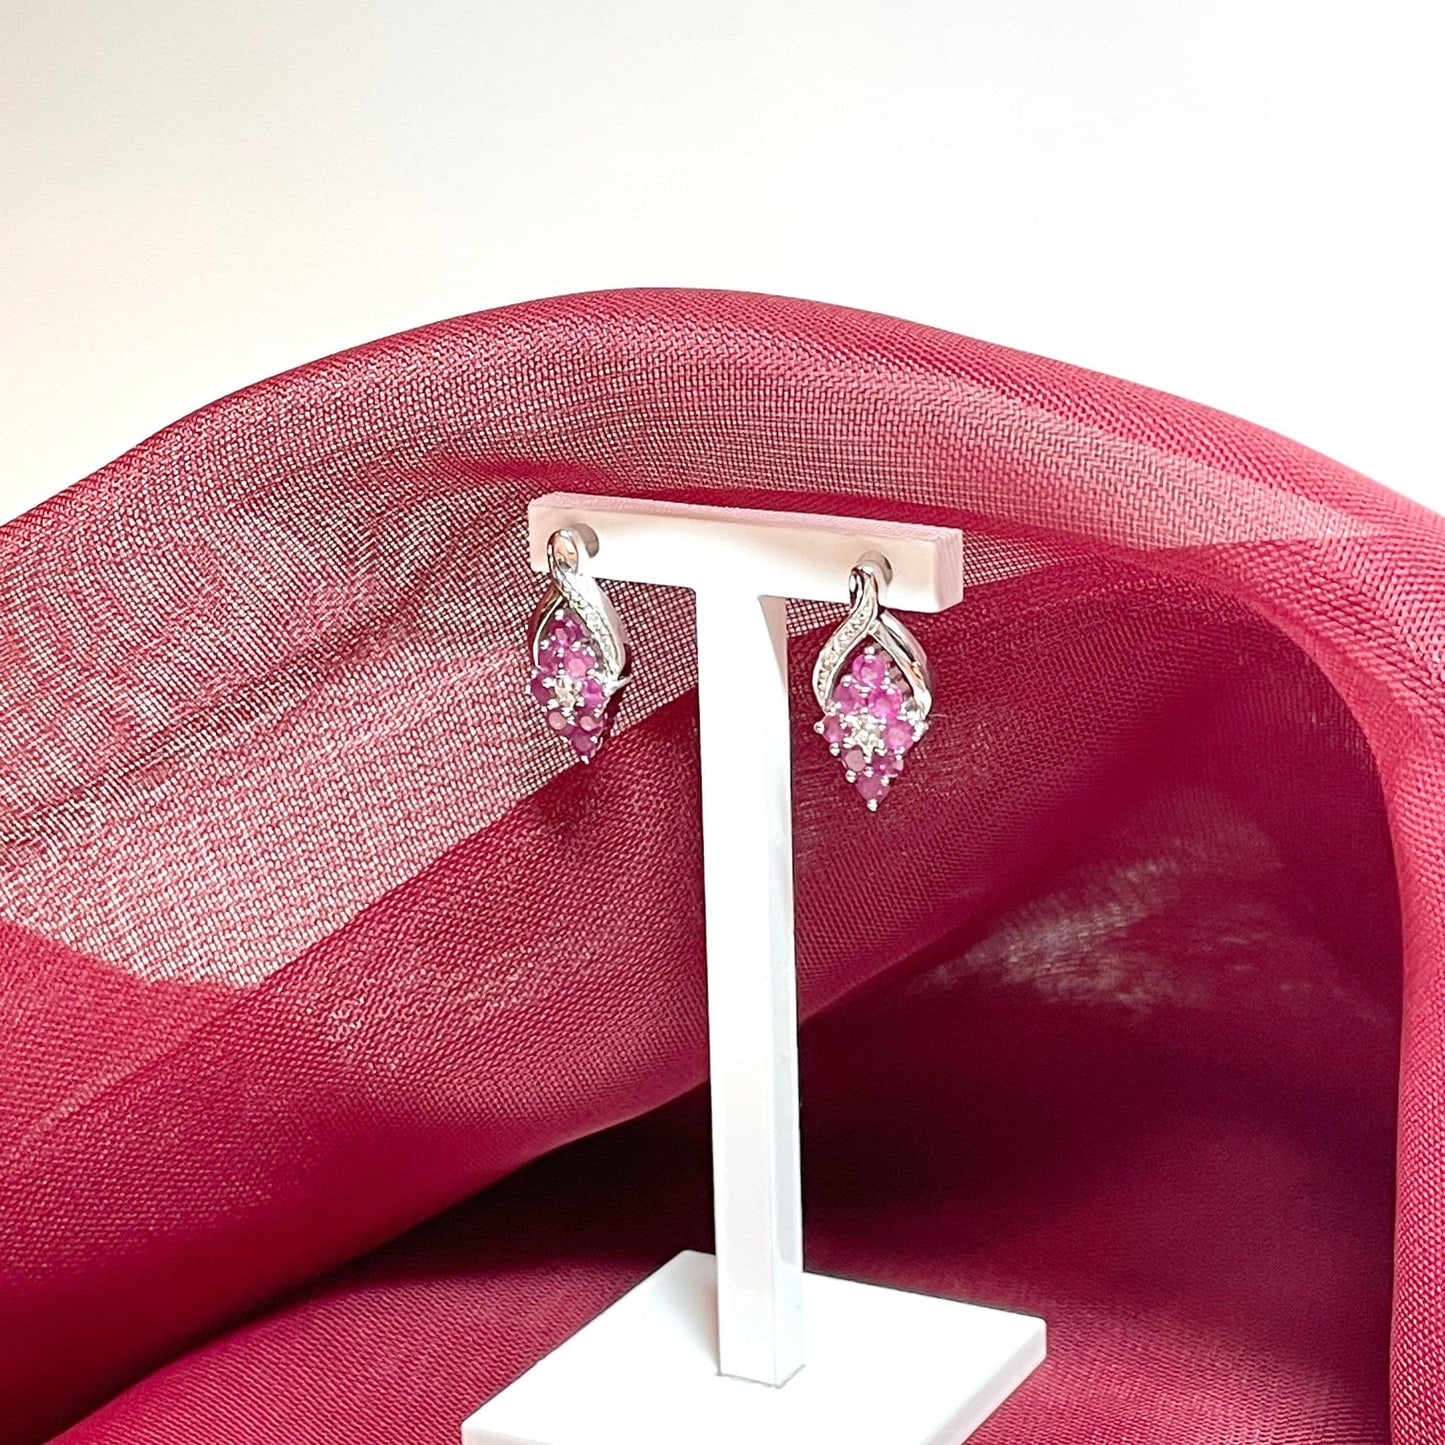 Fancy Ruby And Diamond Sterling Silver Earrings